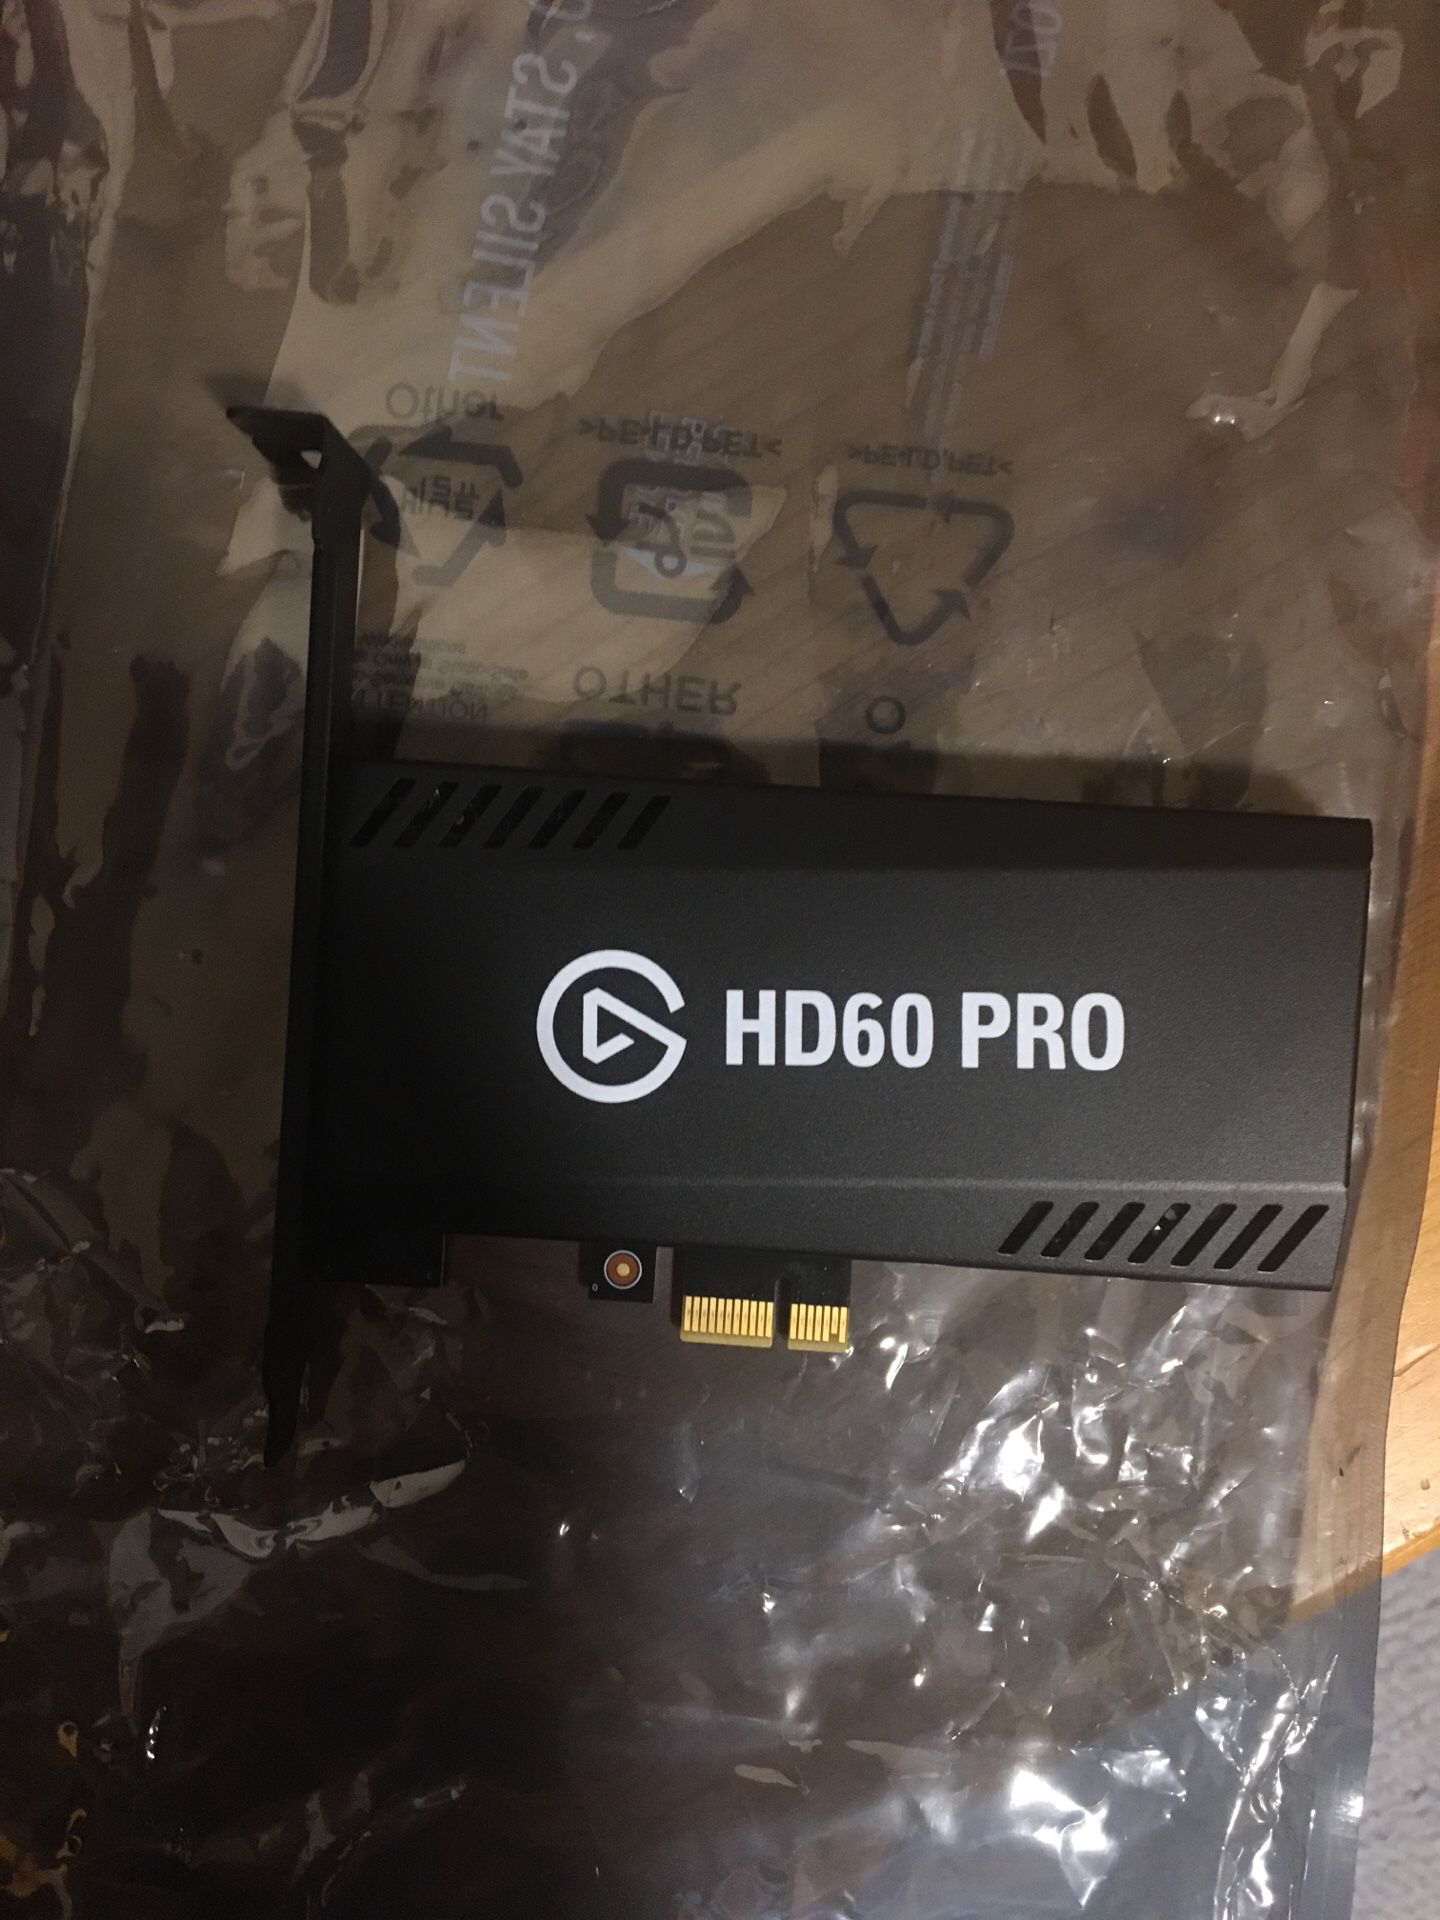 Elgato HD60 PRO